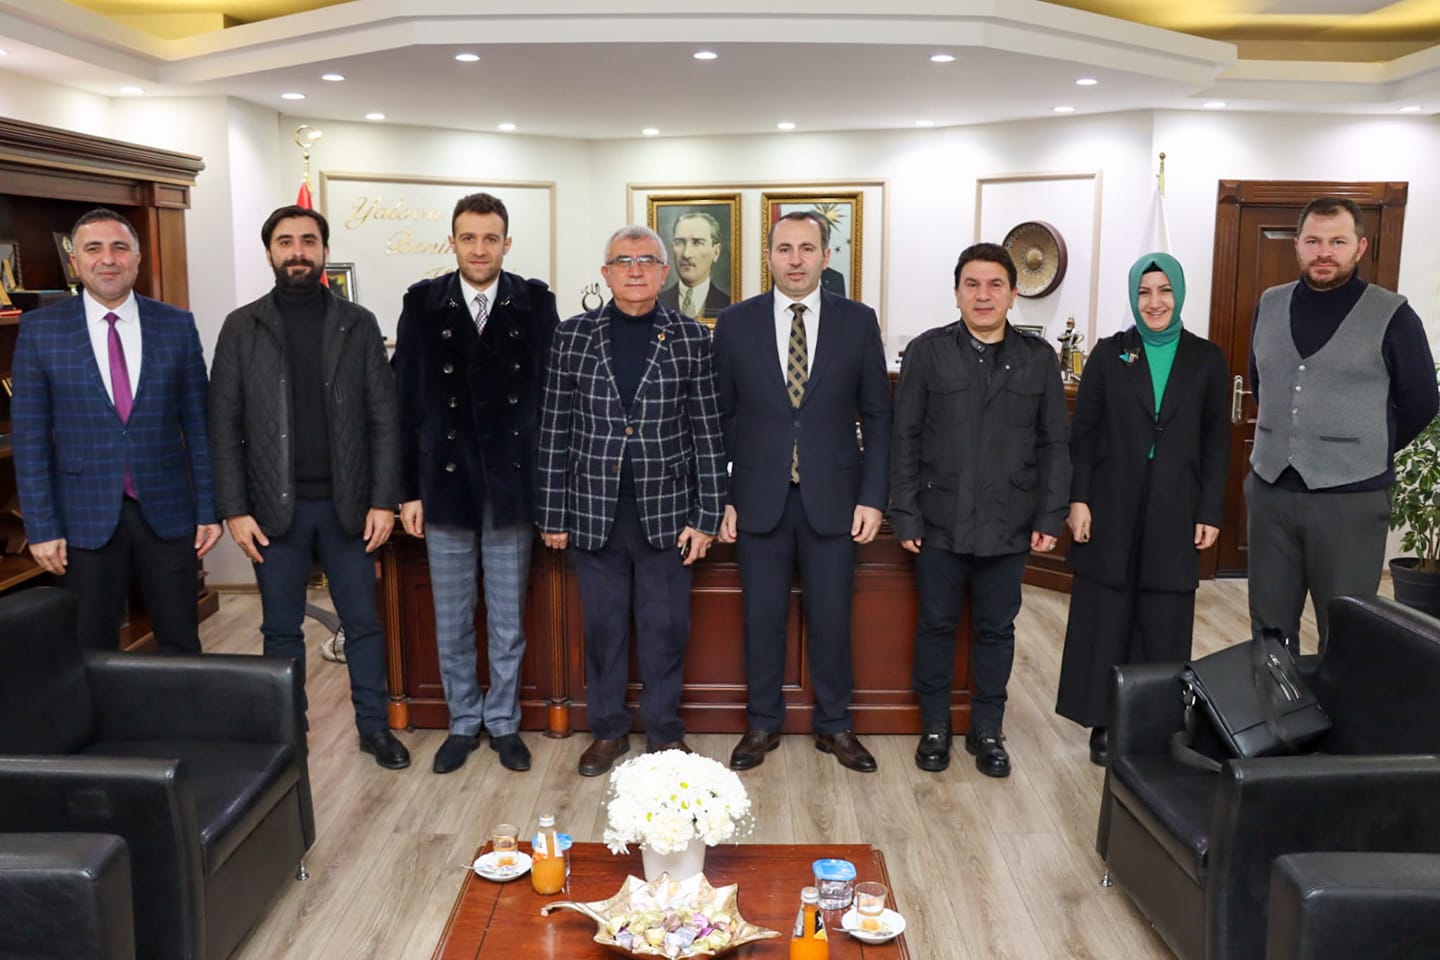 Yalova Üniversitesi Yeni Medya ve İletişim Bölümü Başkan Vekili Prof. Dr. Mehmet Gökhan Genel ile birlikte Yalova Belediye Başkan Vekilimiz Mustafa Tutuk’u ziyaret